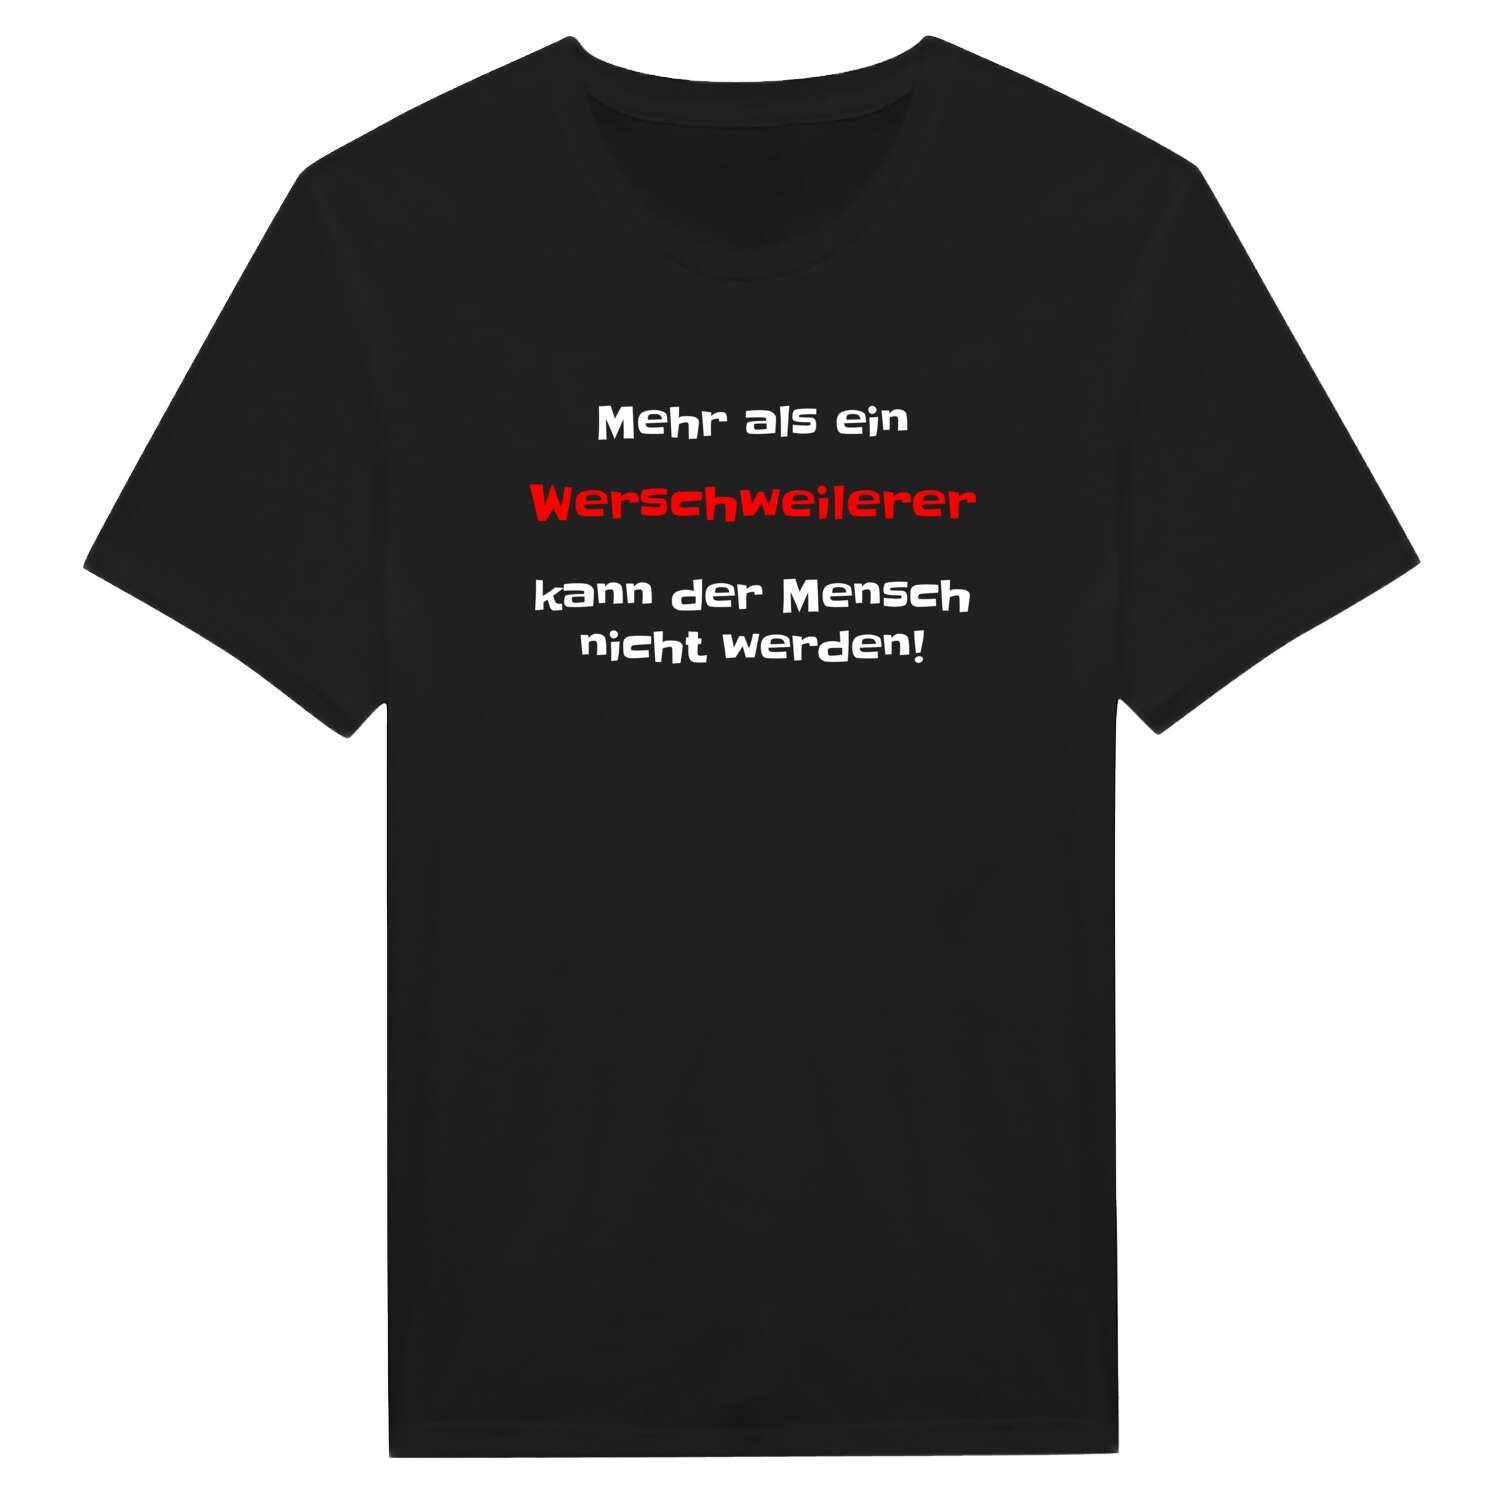 Werschweiler T-Shirt »Mehr als ein«